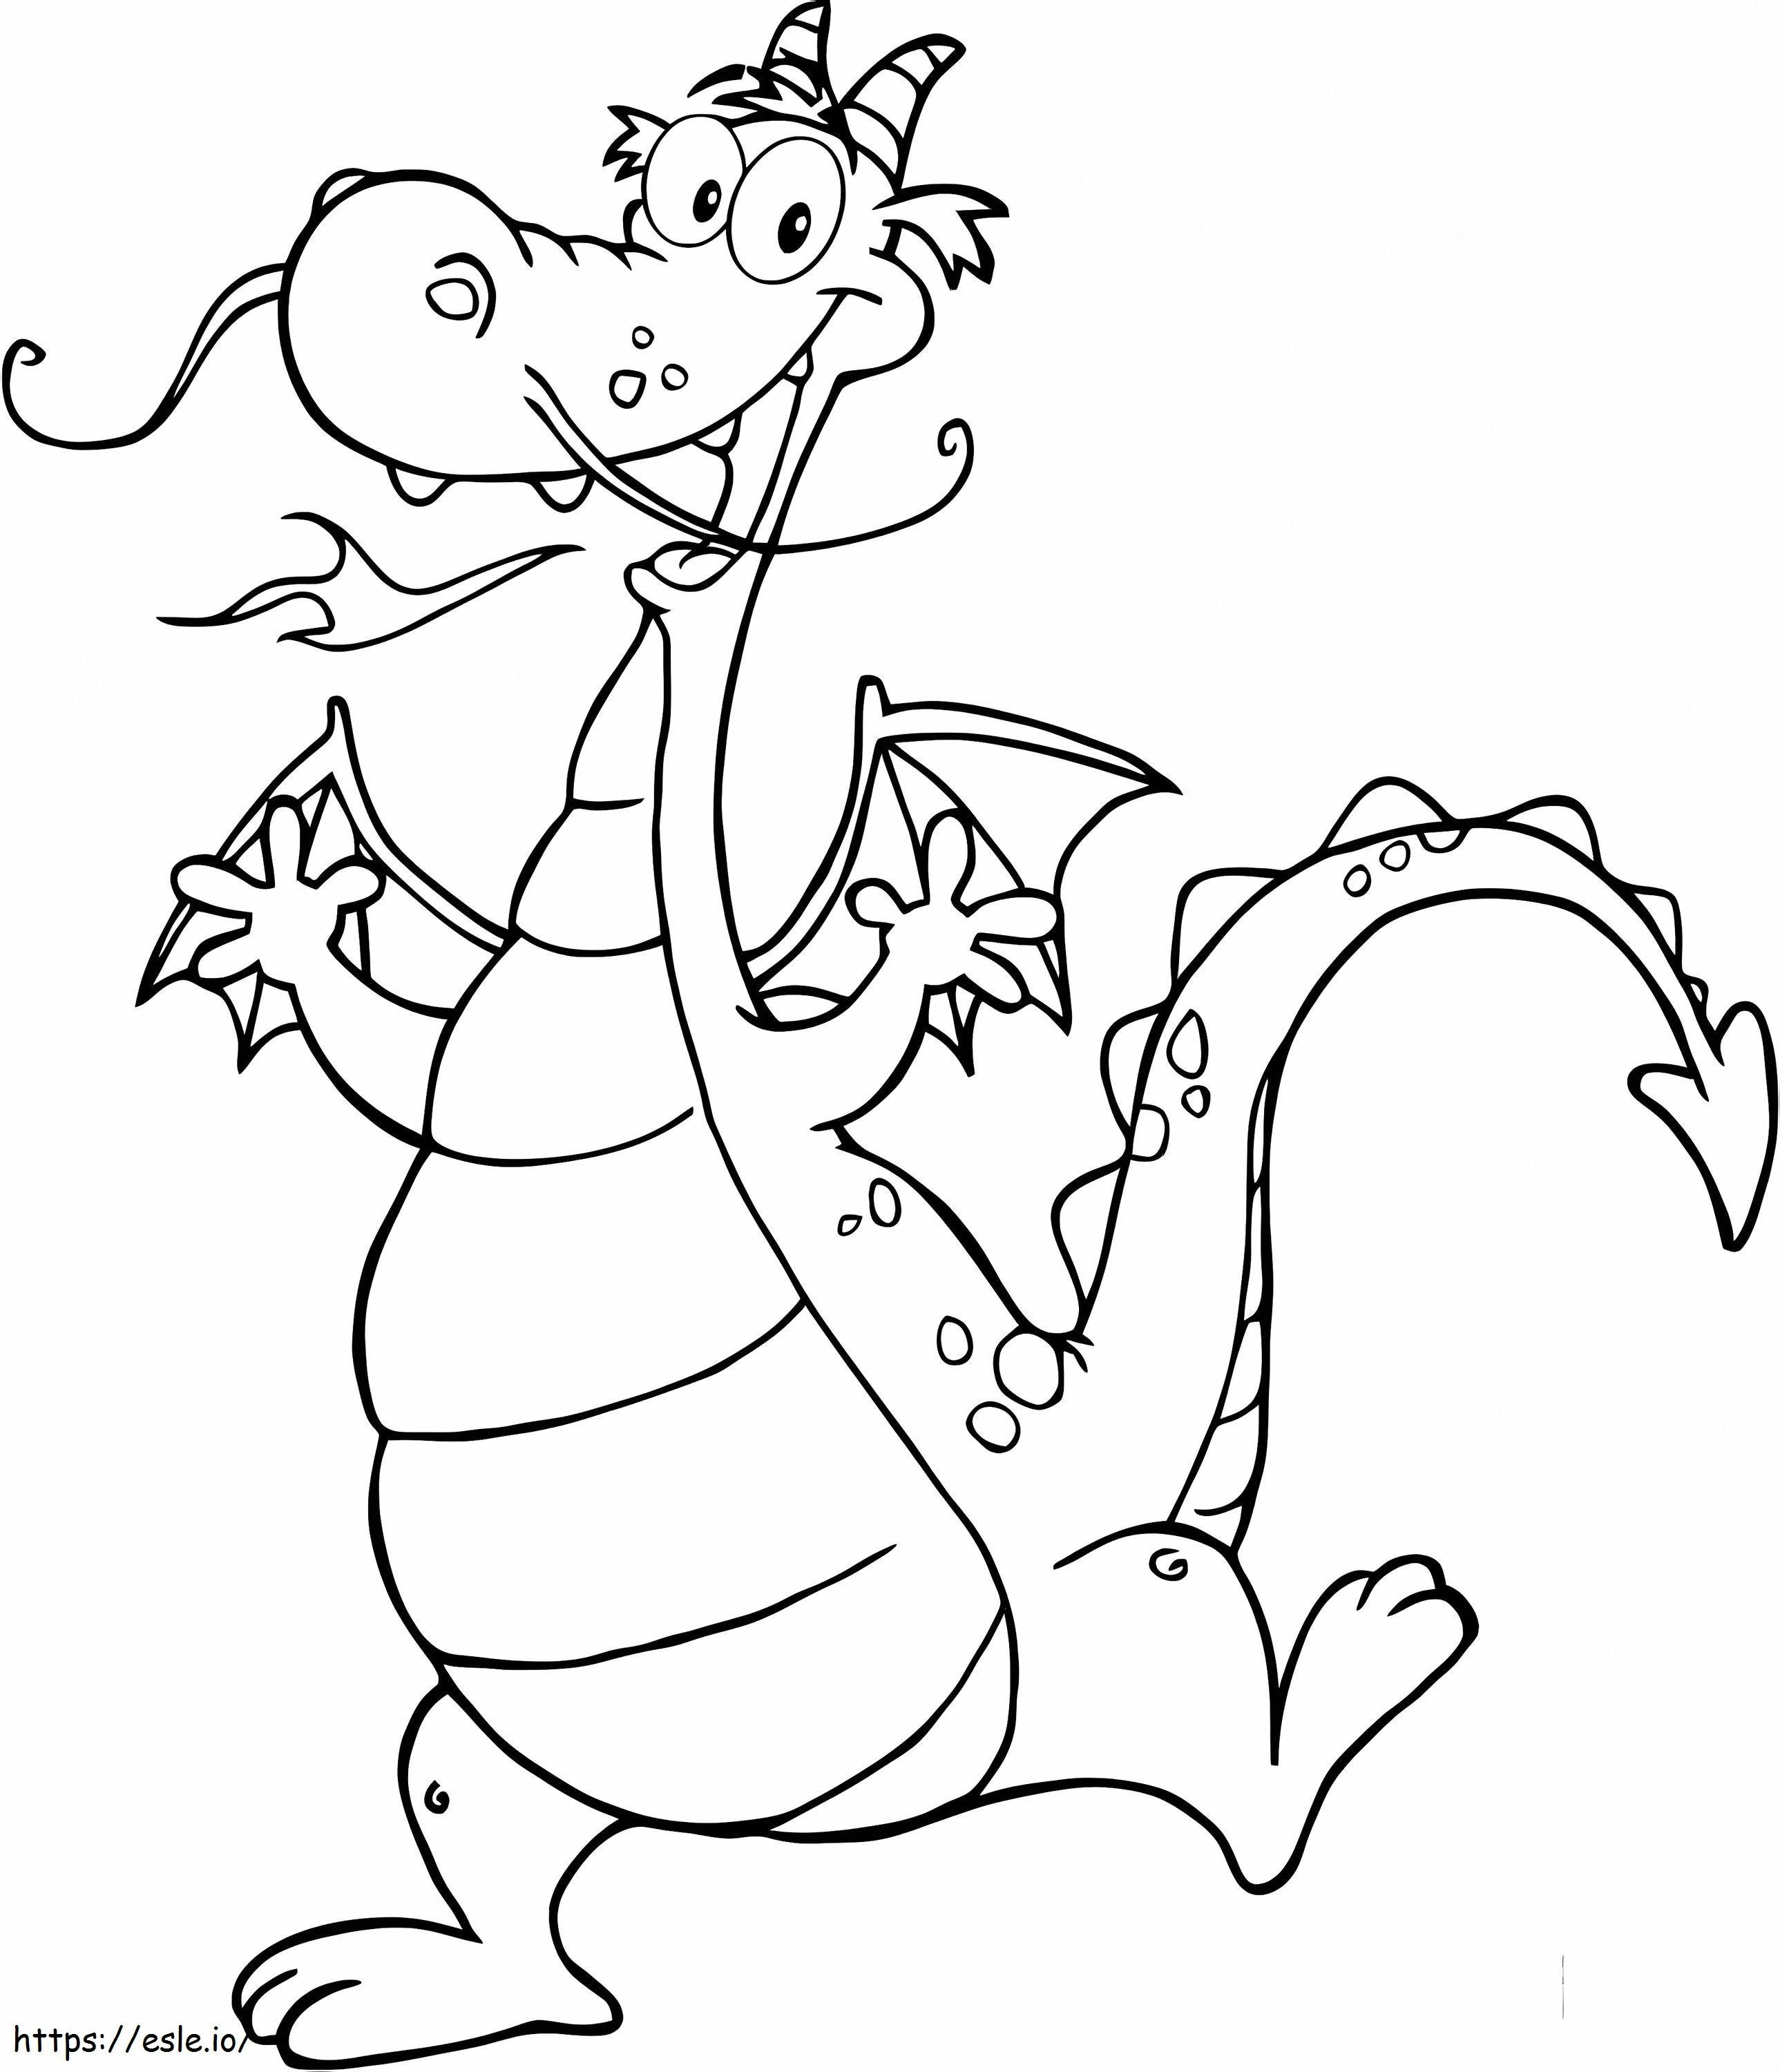 A Happy Dragon coloring page